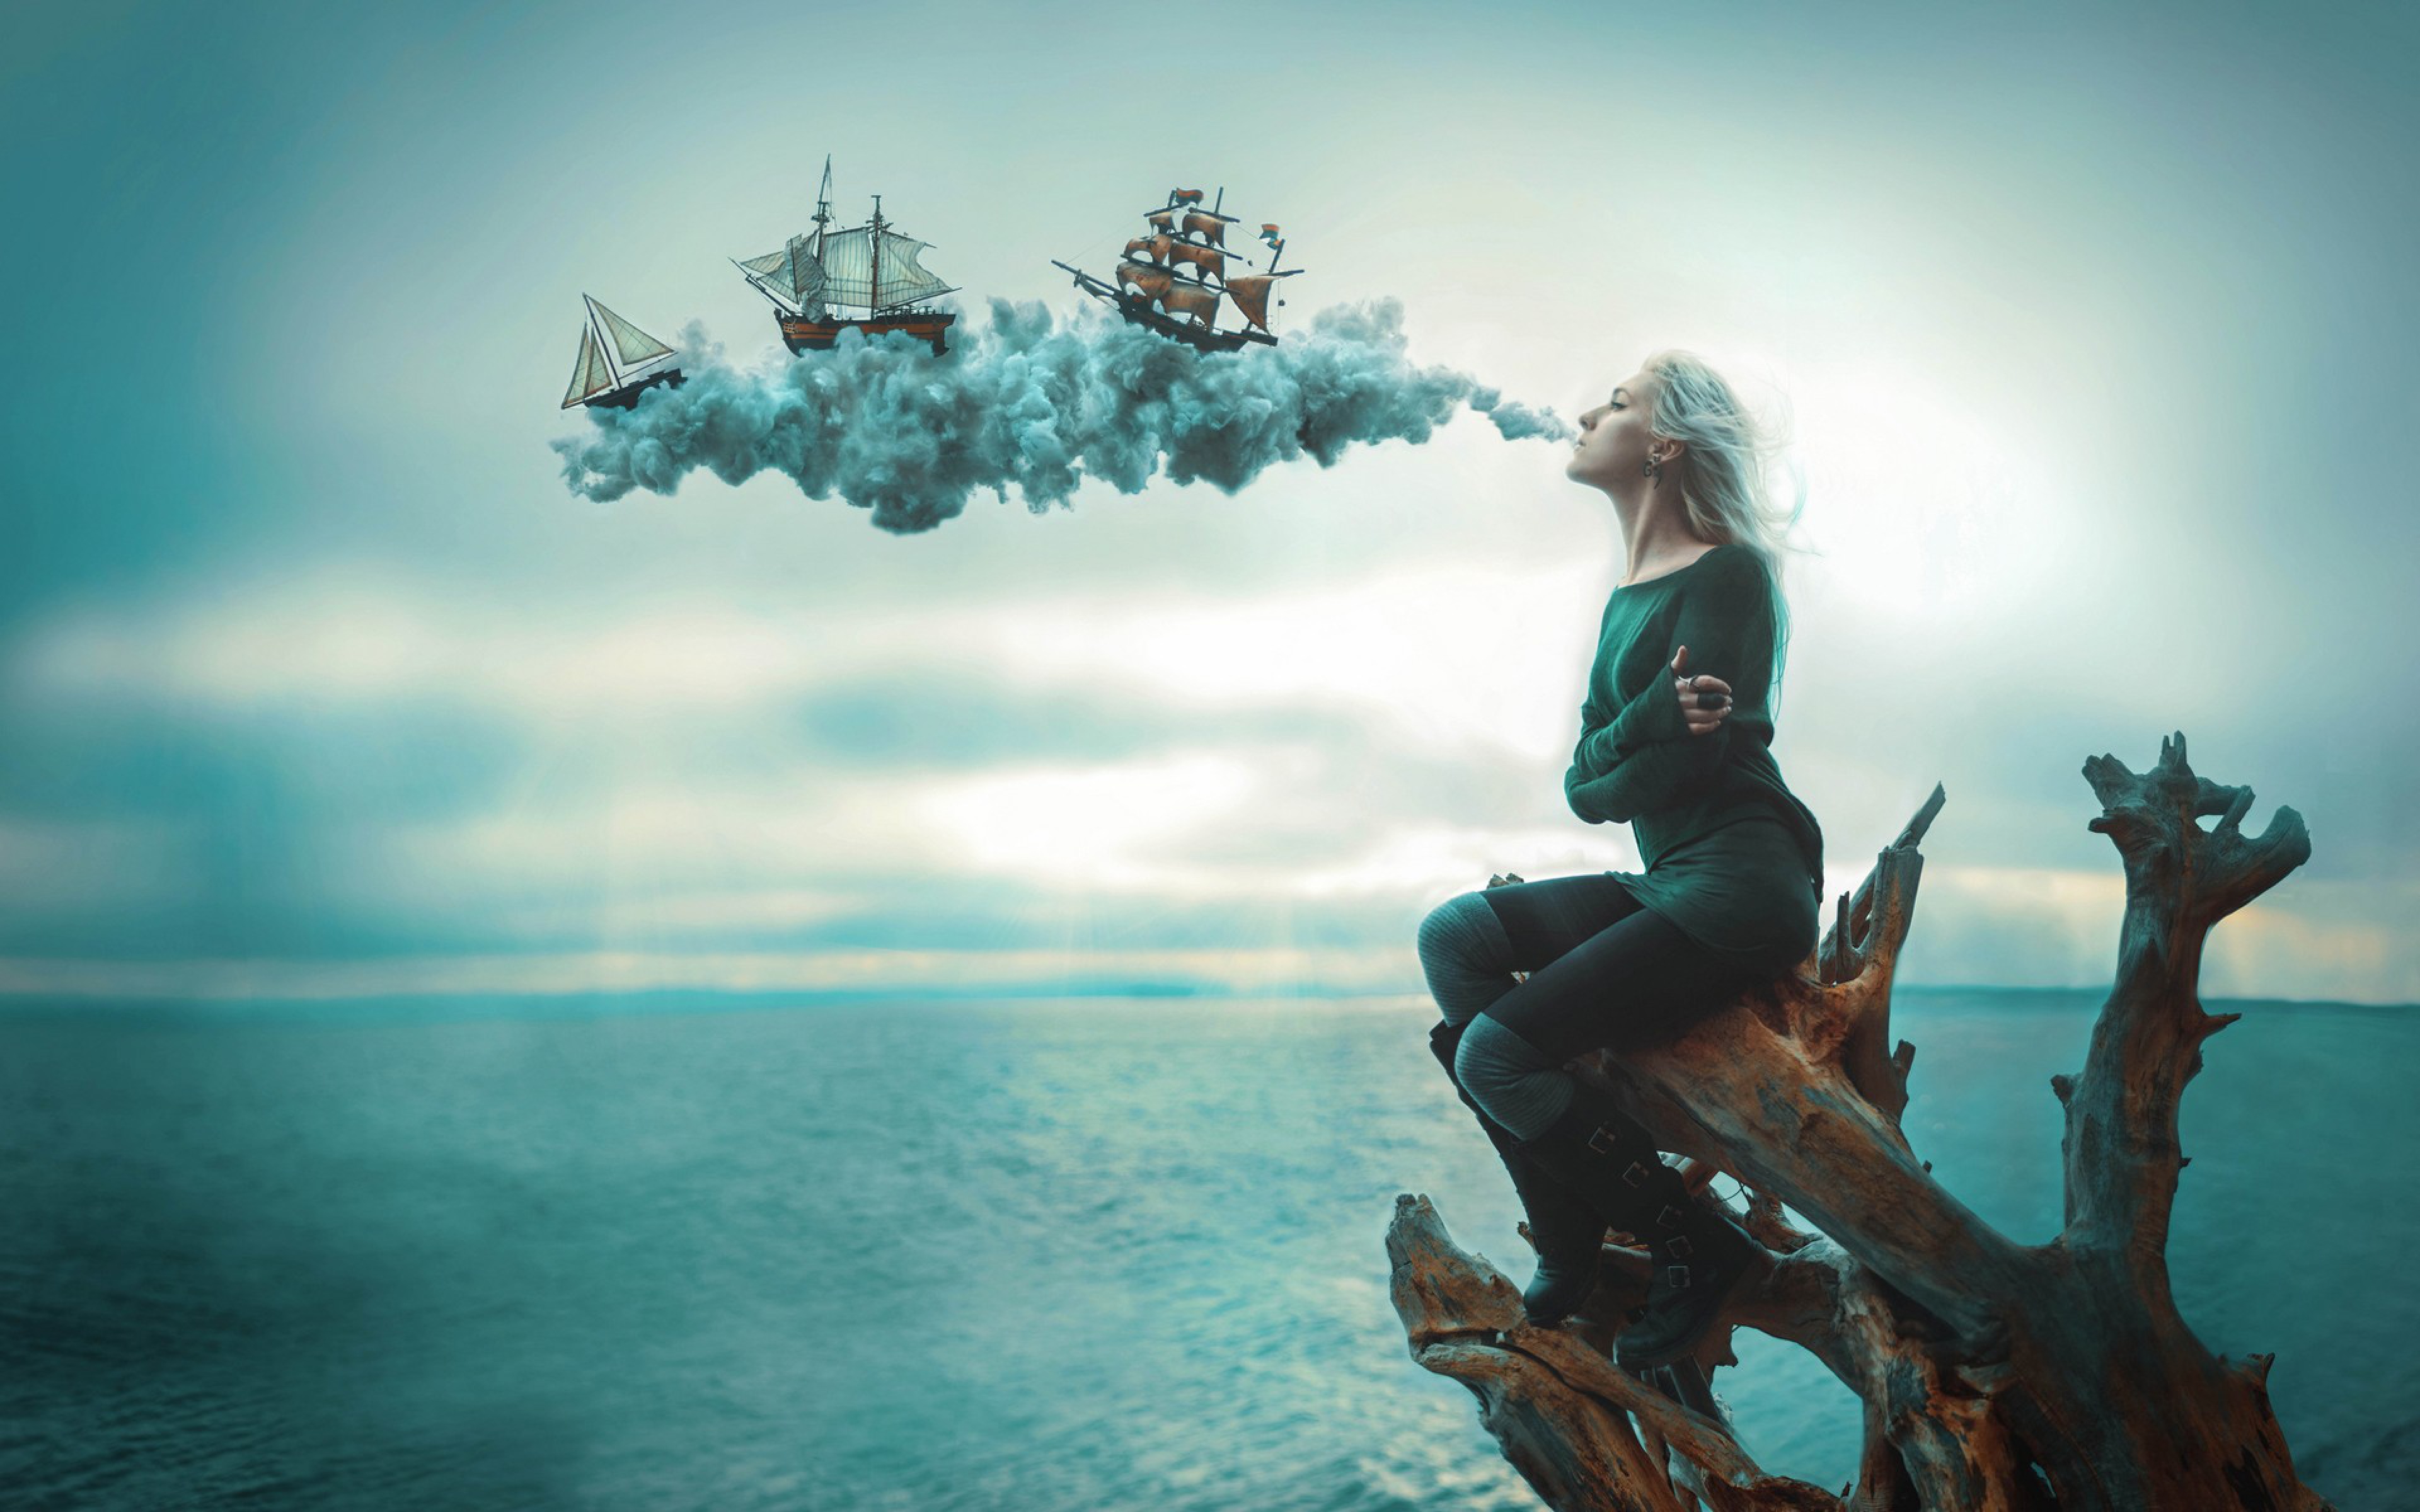 Воплощение желаний в жизнь. Девушка на корабле. Девушка-море. Фотосессия в стиле фантастика. Фантастическое море.